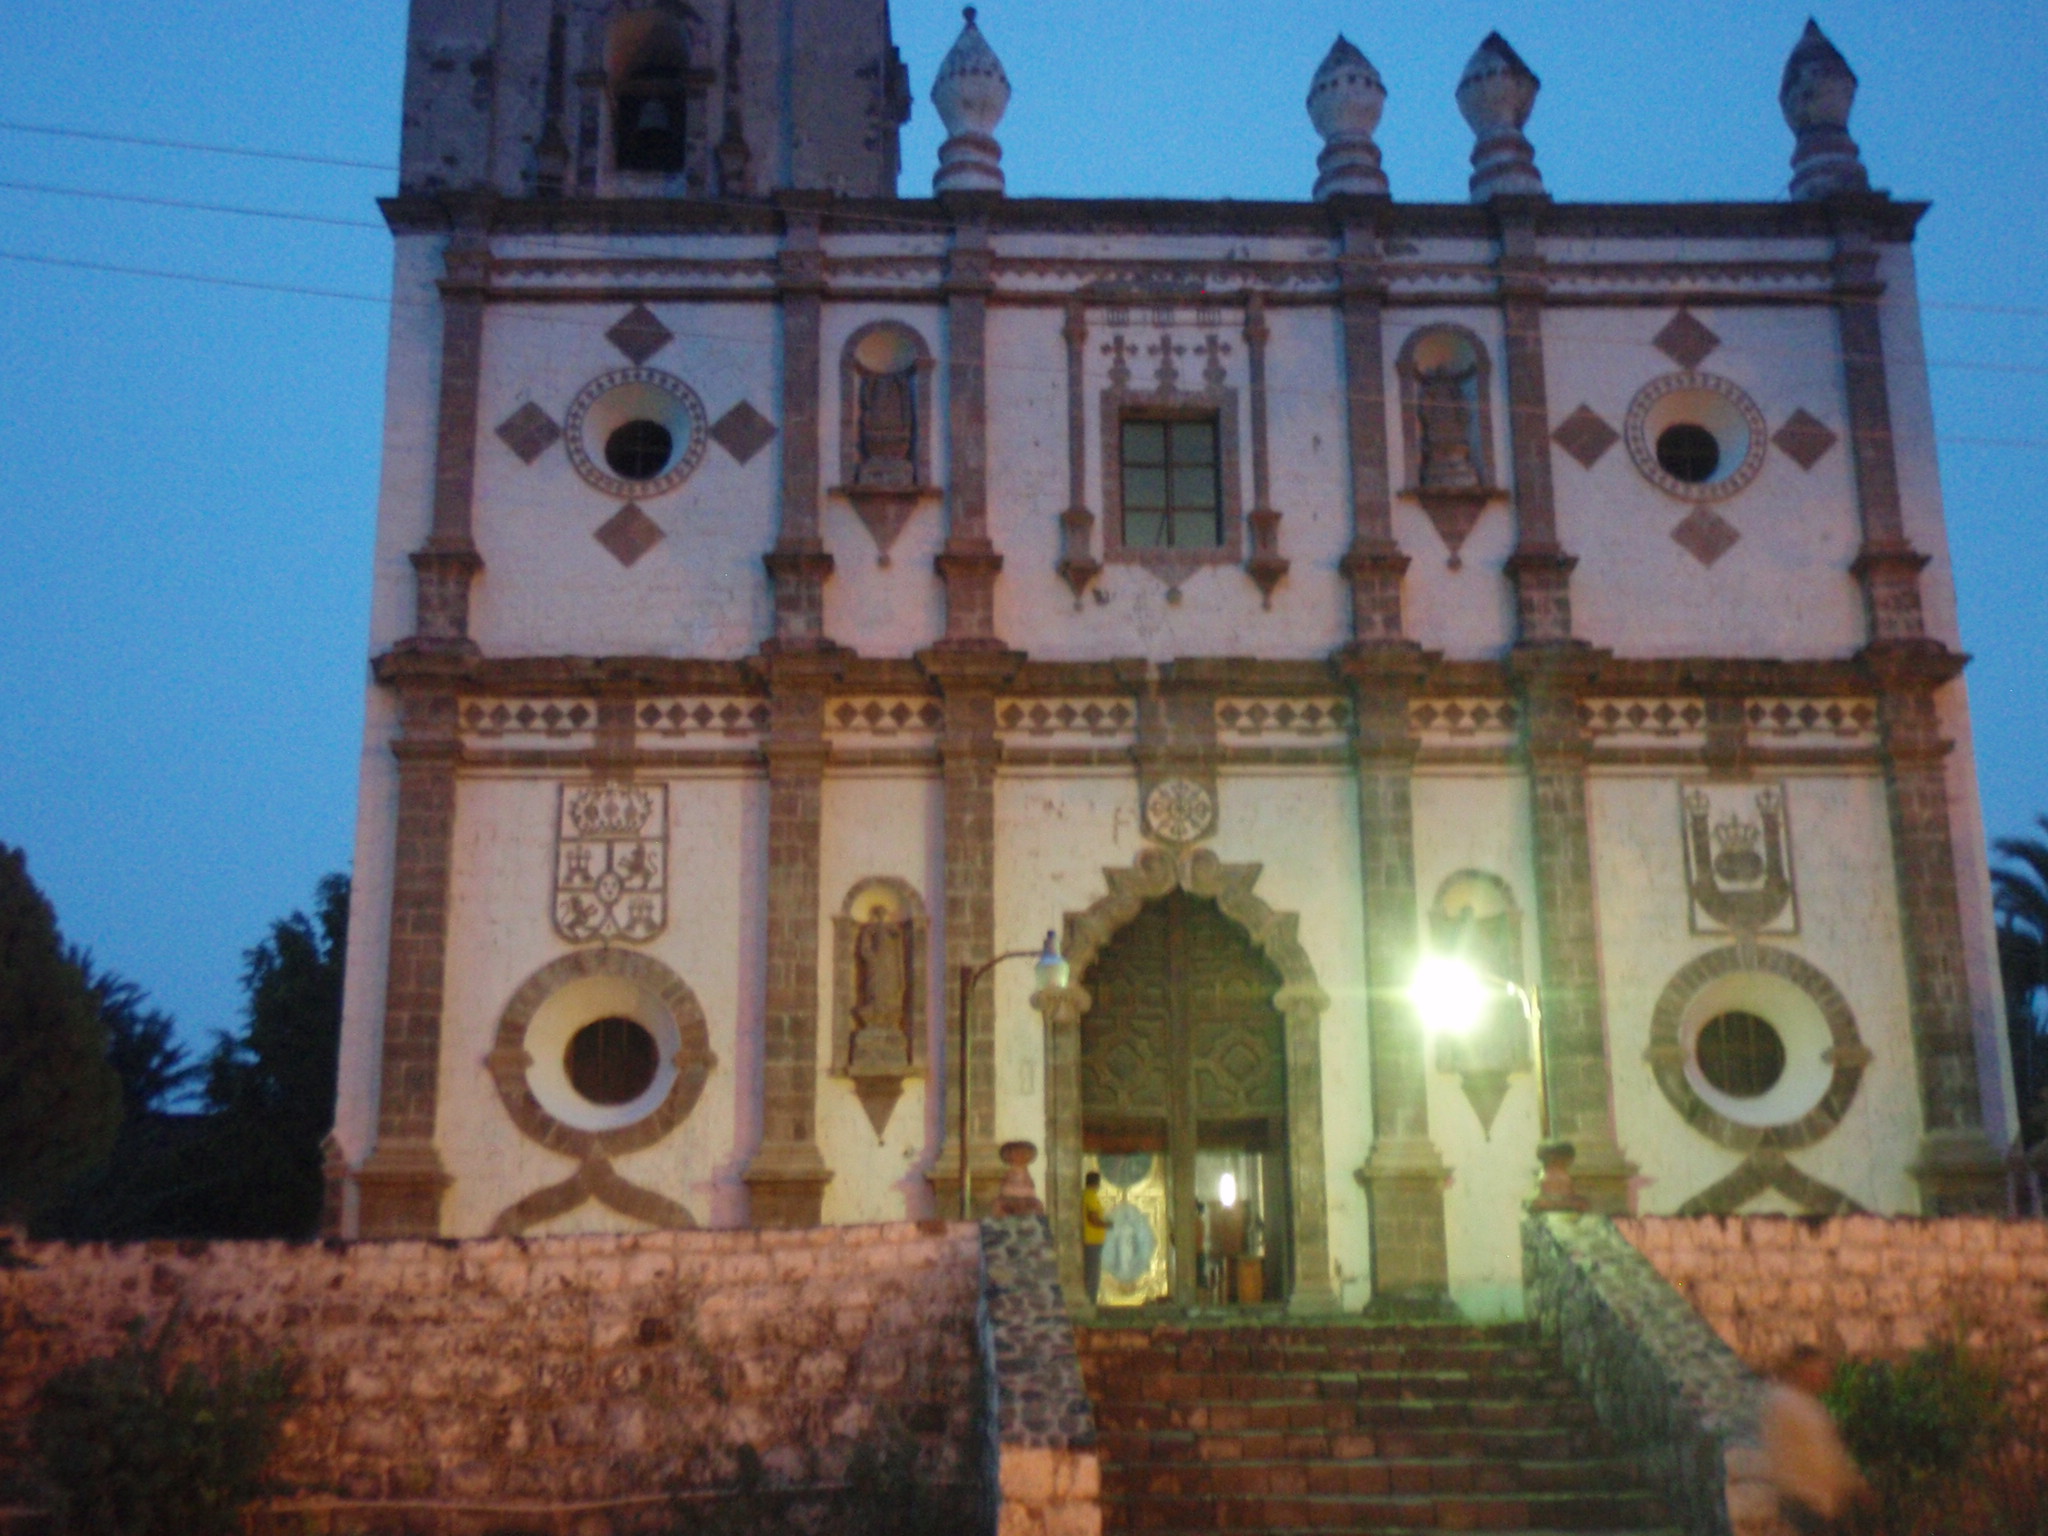 San Ignacio Church